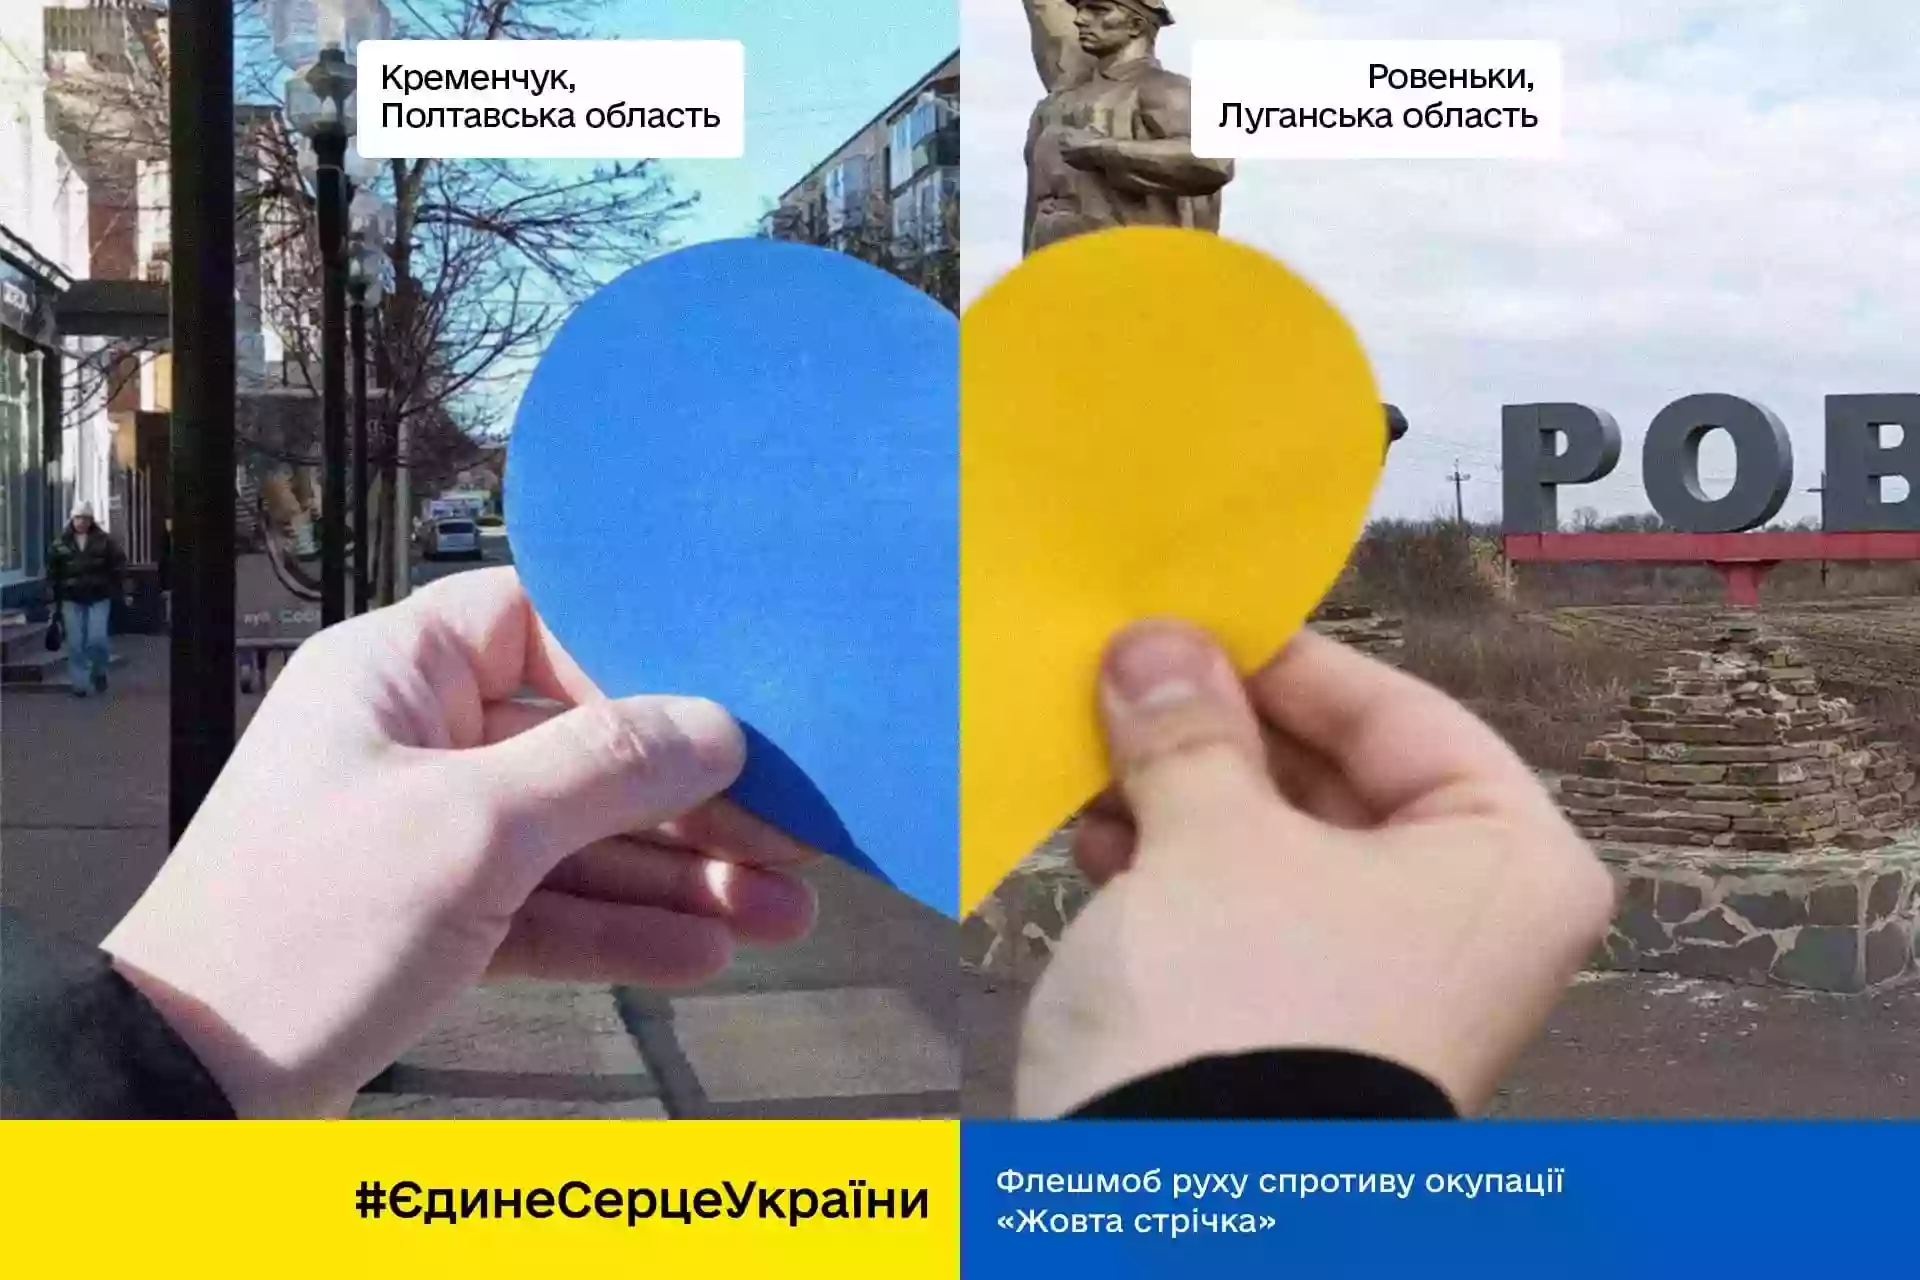 Рух спротиву Жовта стрічка ініціював флешмоб «Єдине серце України»